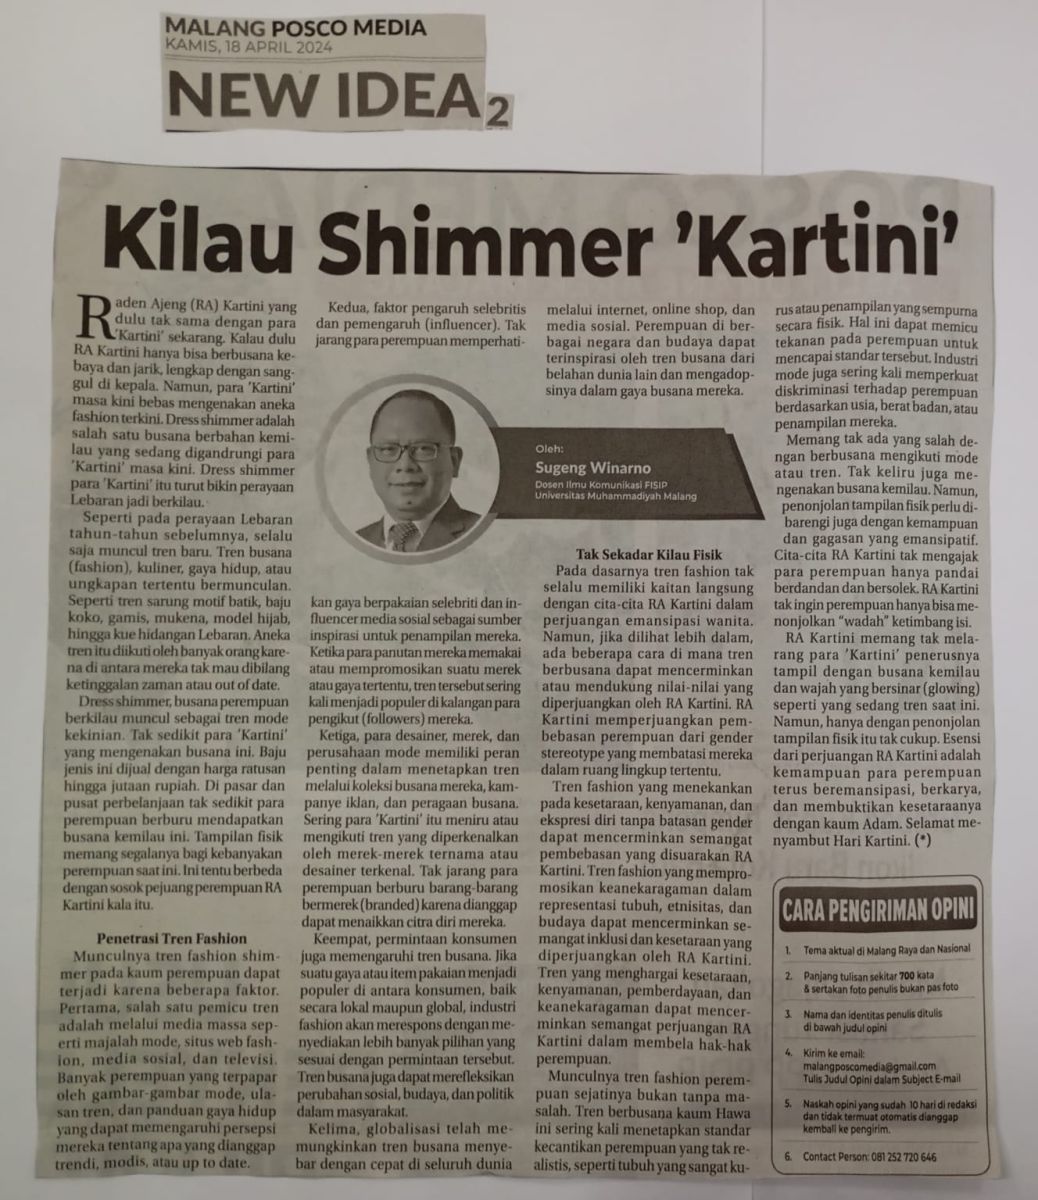 Kilau Shimmer 'Kartini'